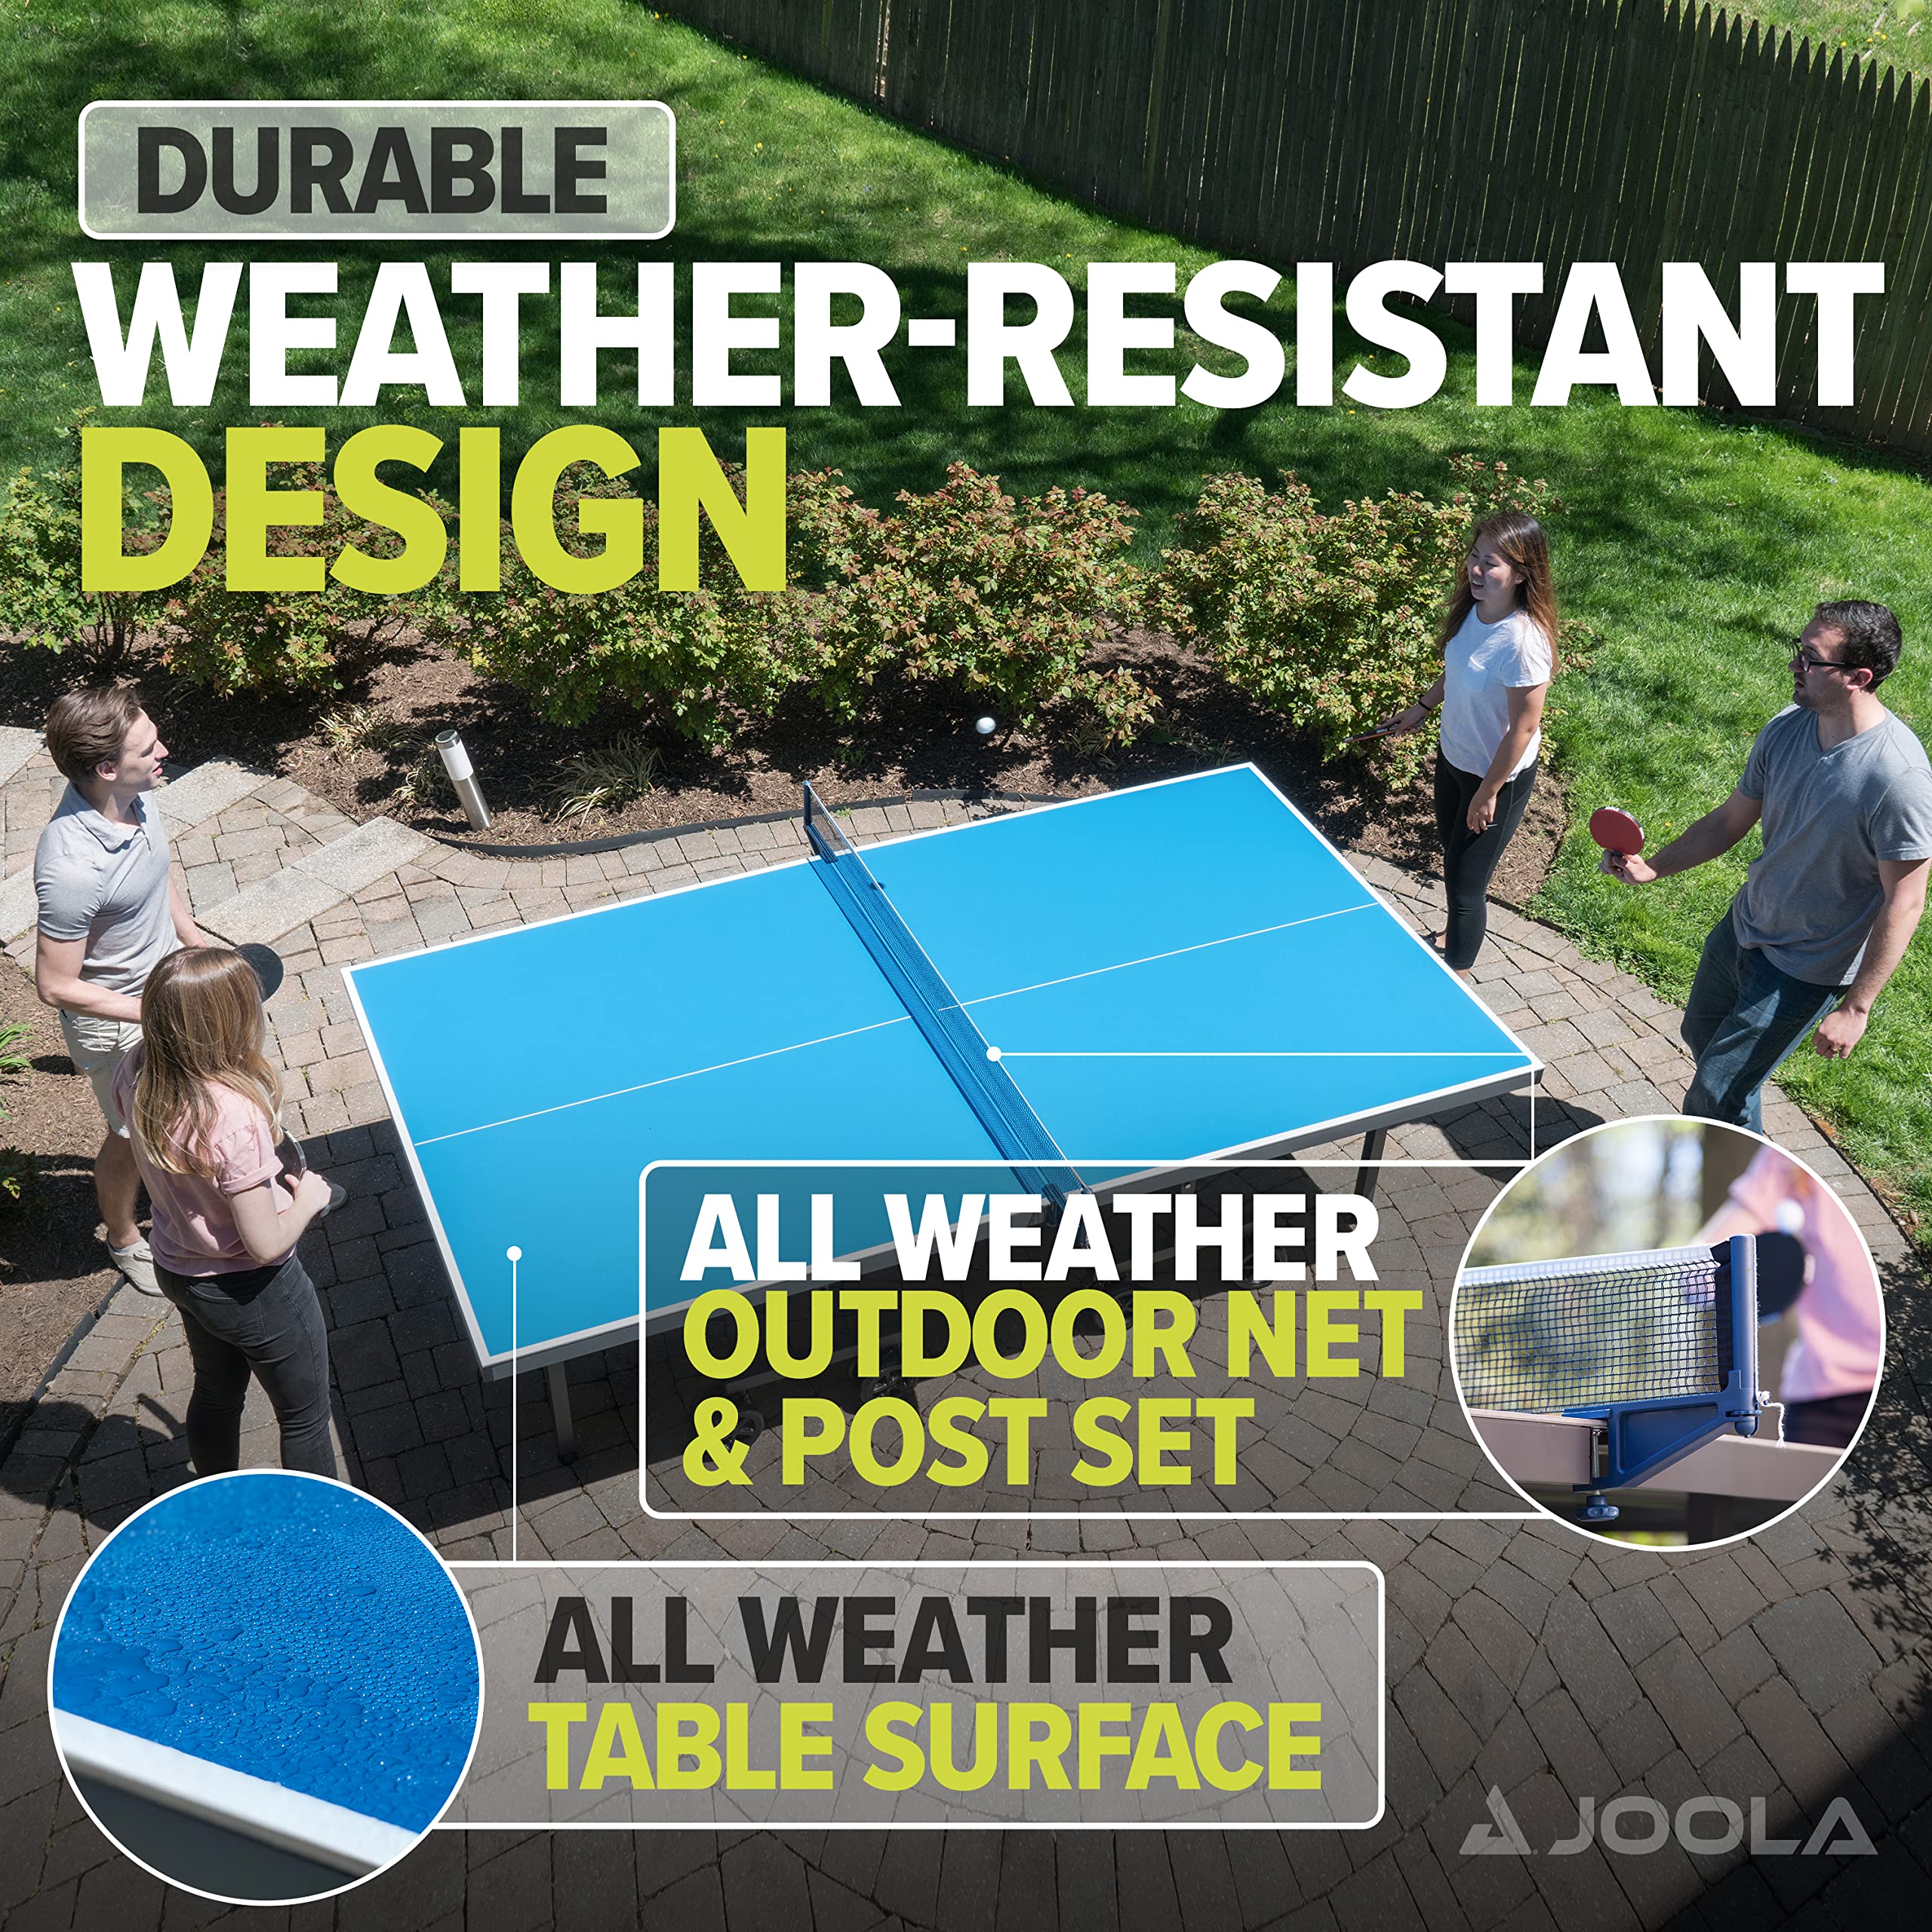 JOOLA Nova Pro Plus Indoor/Outdoor Table Tennis Table with Weatherproof